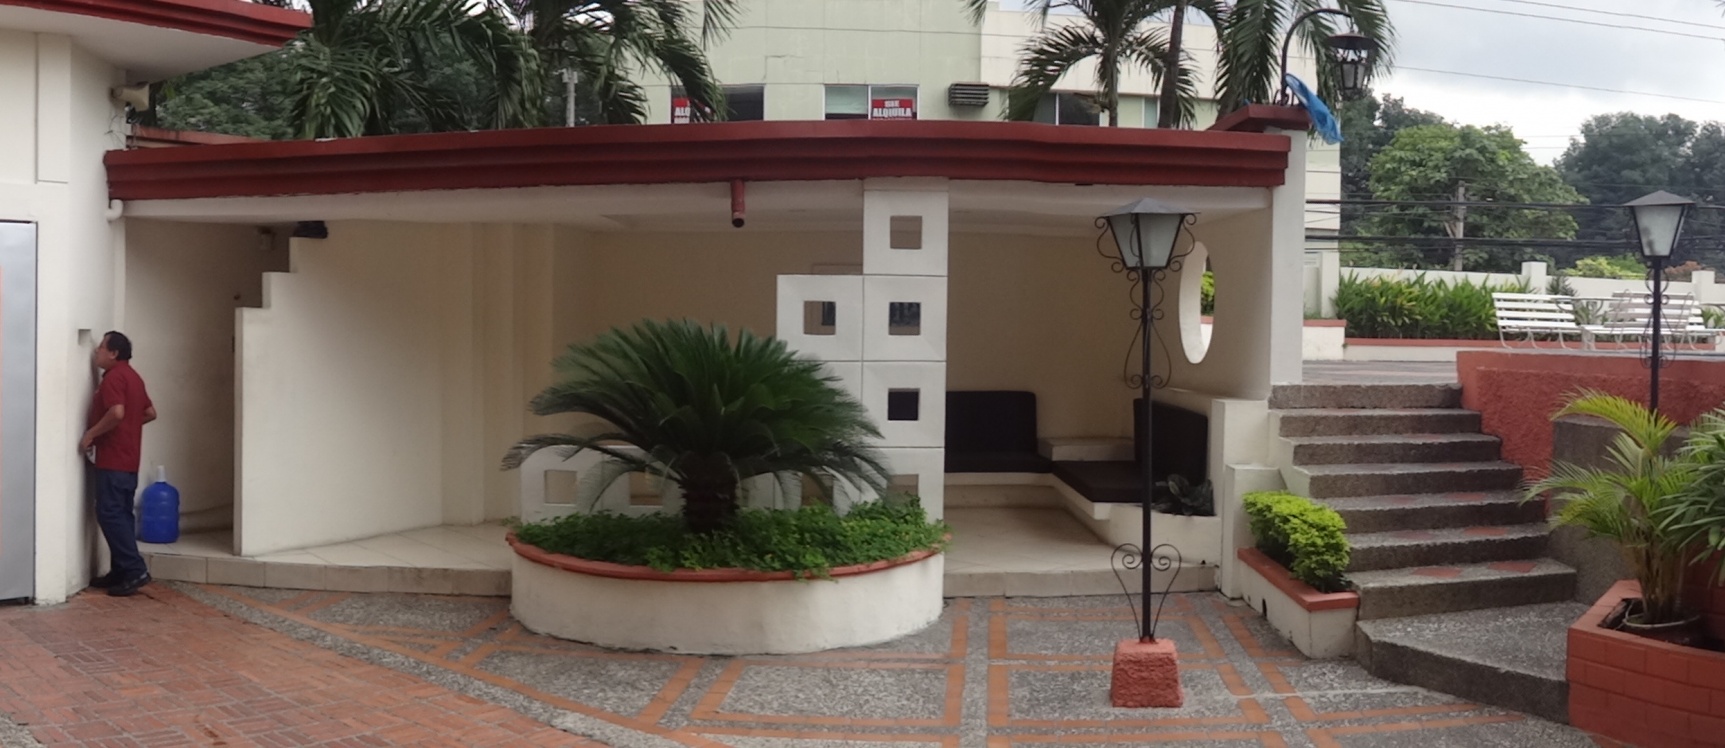 GeoBienes - Vendo Departamento en Urdesa, Guayaquil  - Plusvalia Guayaquil Casas de venta y alquiler Inmobiliaria Ecuador